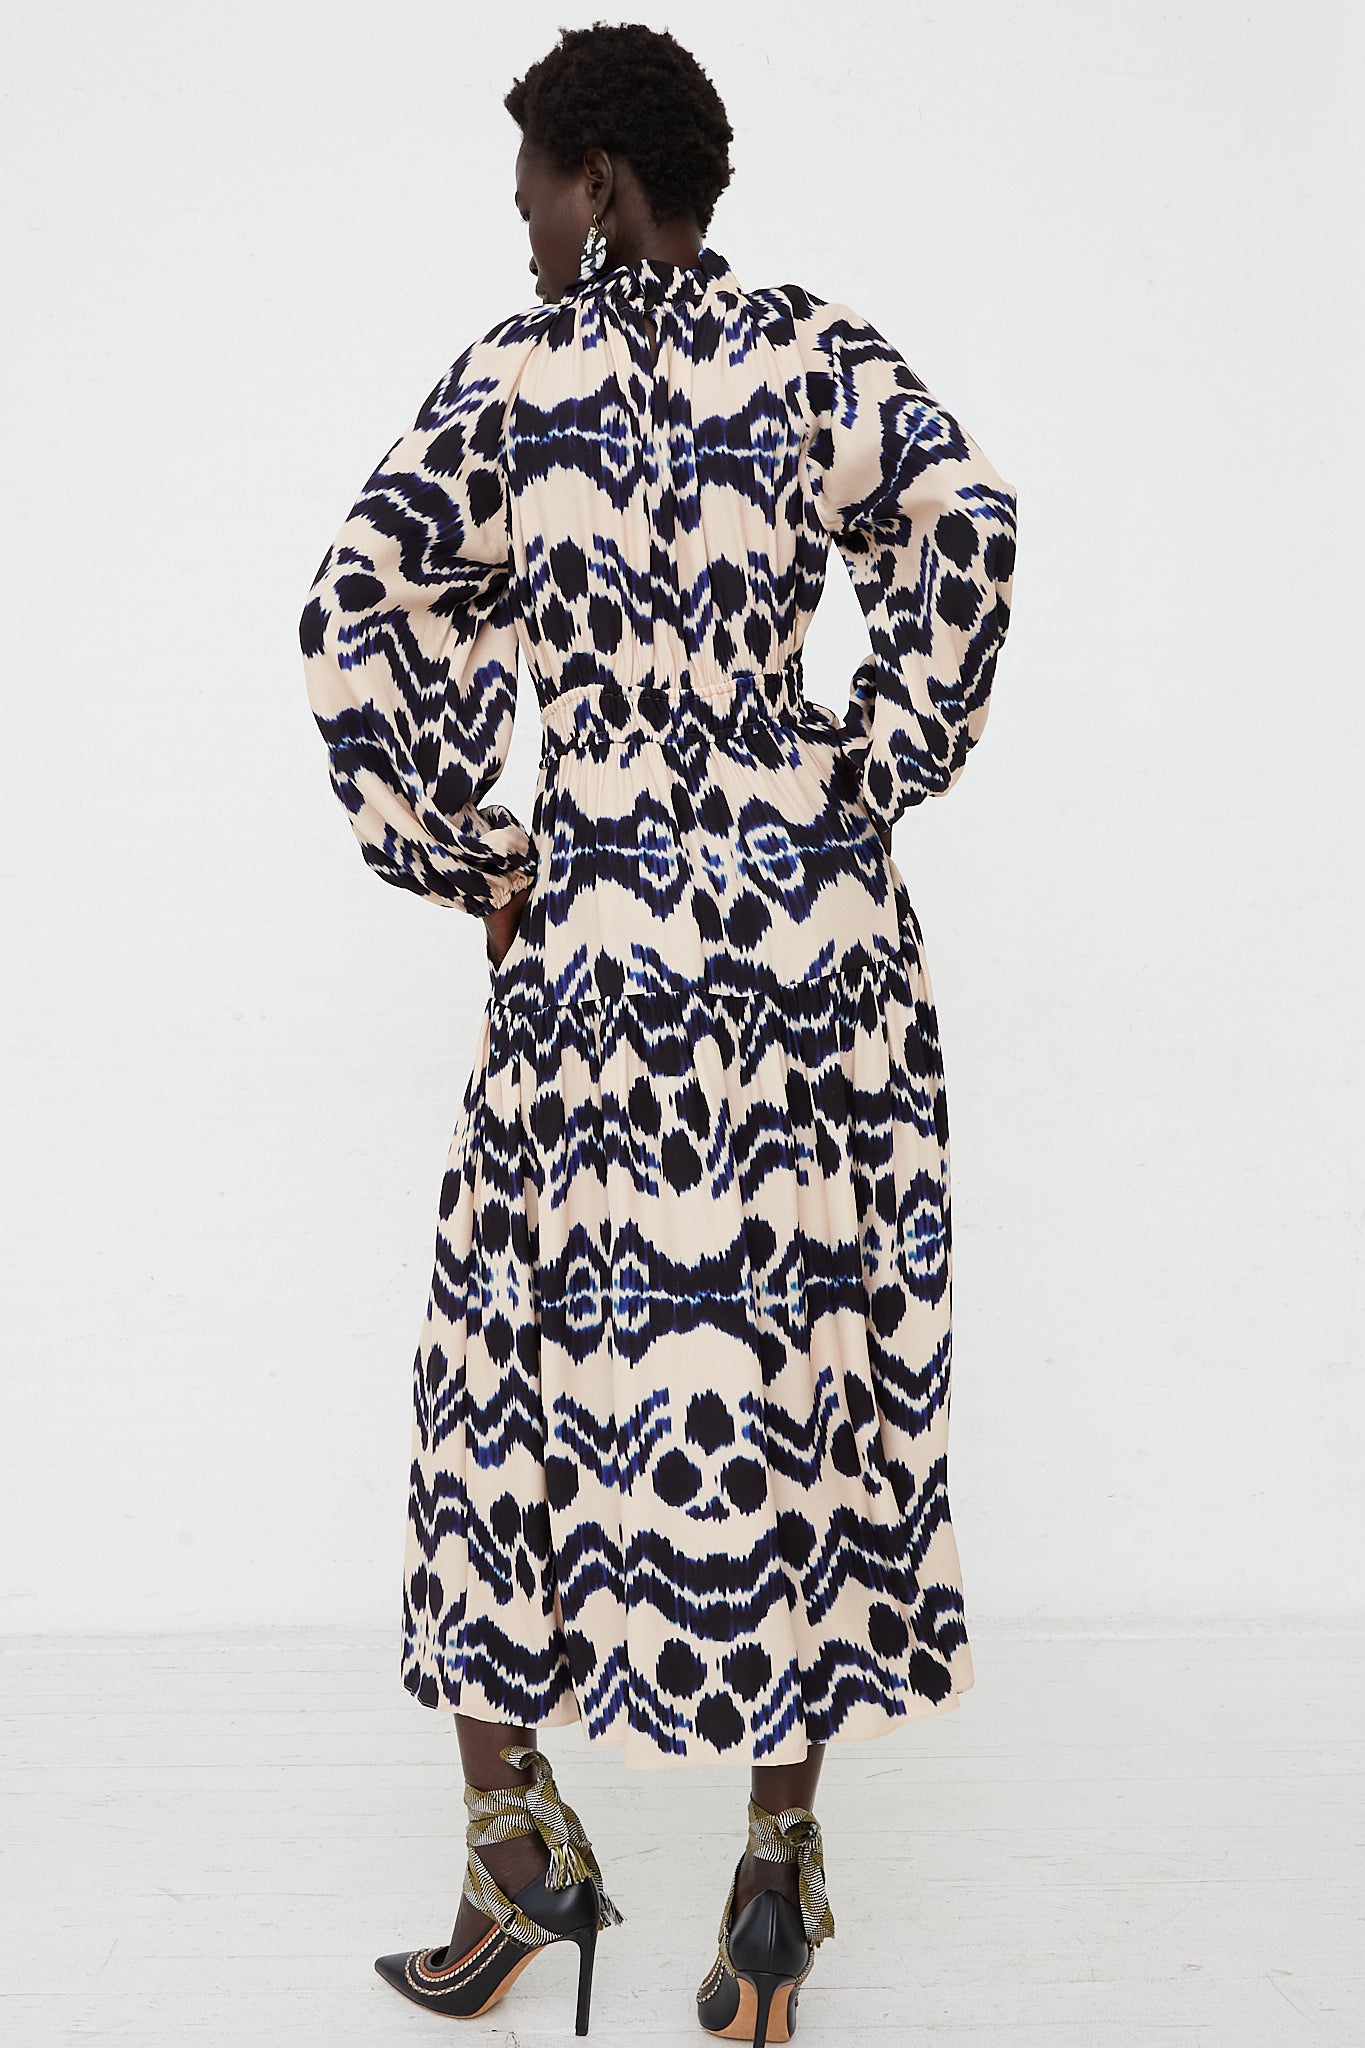 Annalisa Satin Dress in Nimbus by Ulla Johnson for Oroboro Back